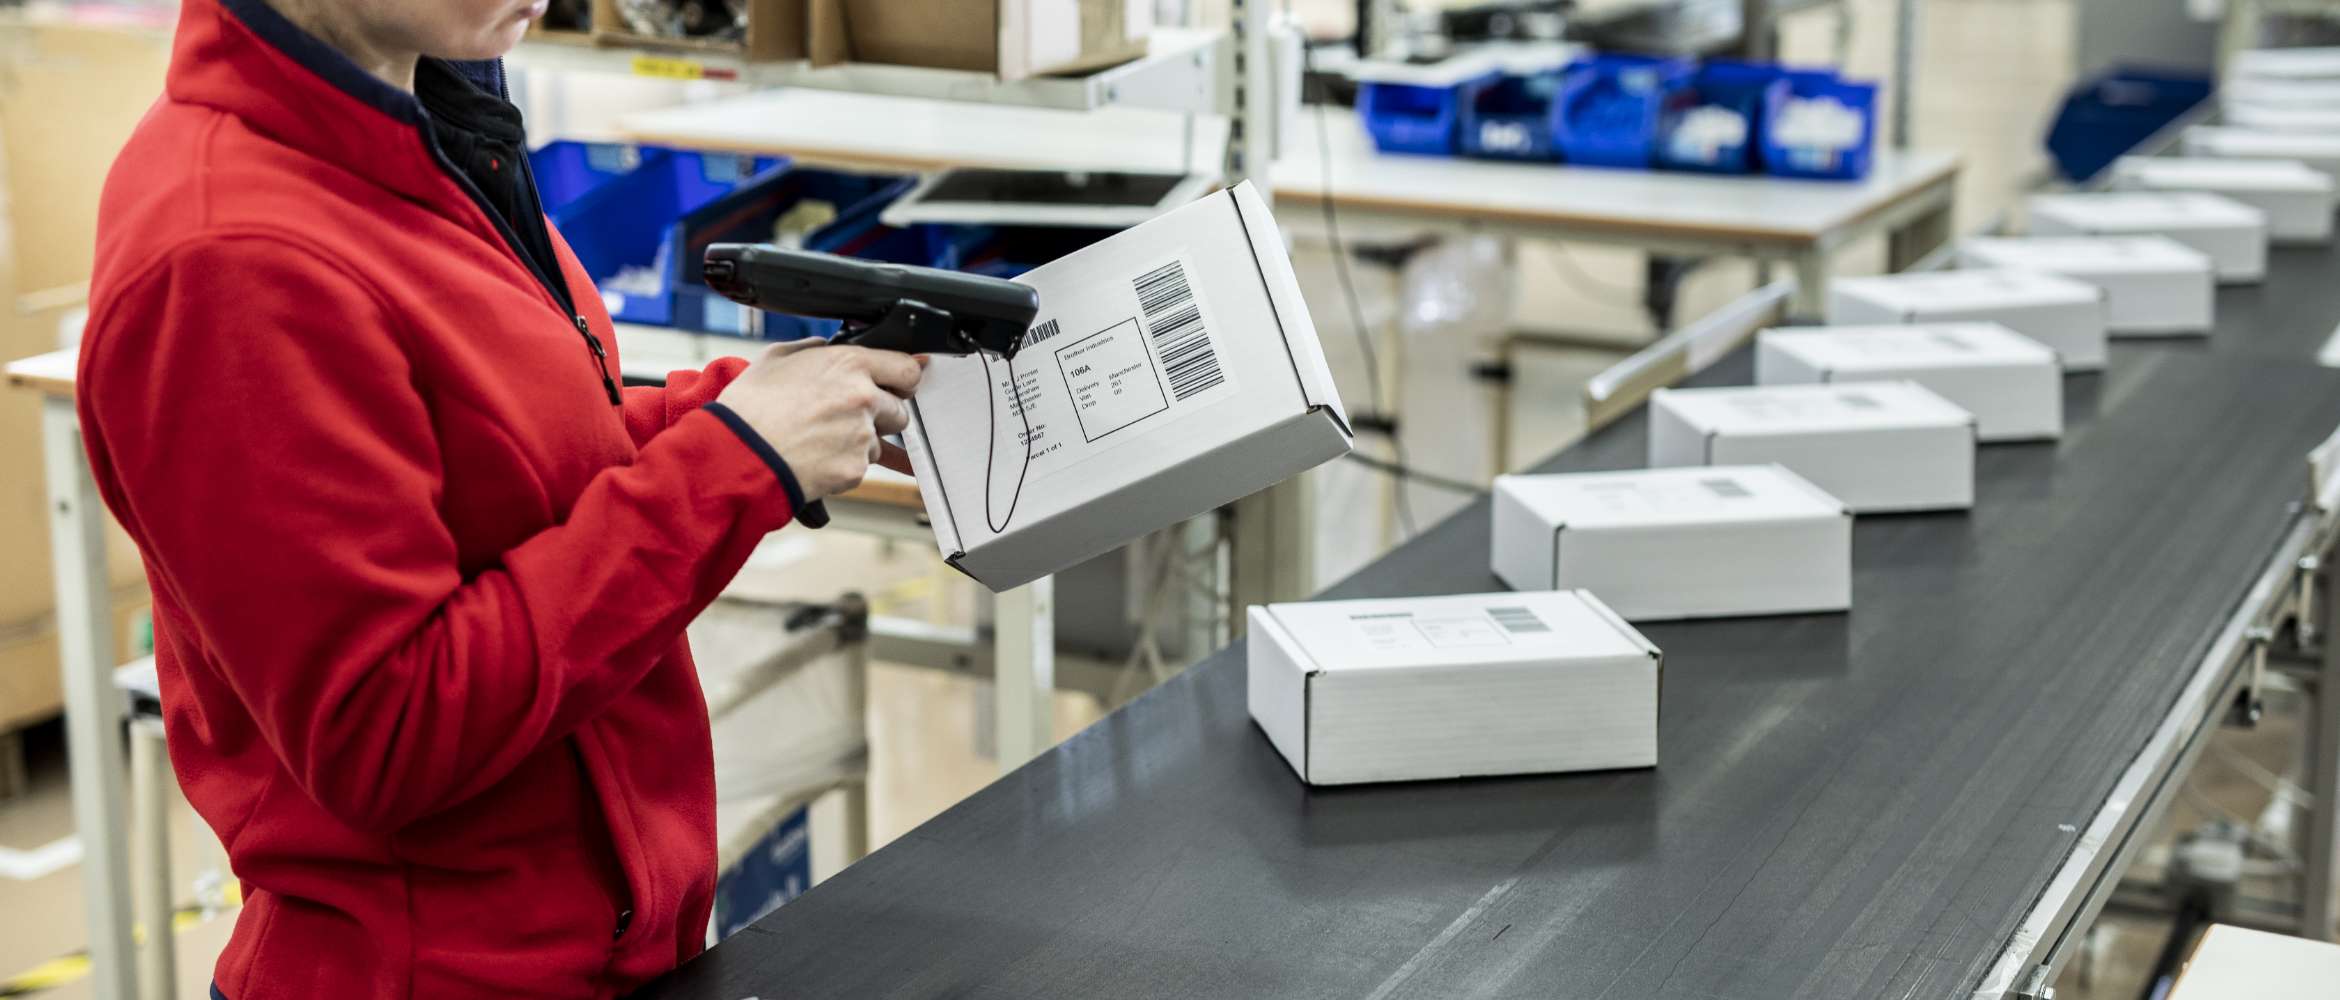 Et transportbånd på en fabrikk er fylt med pakker mens en arbeider skanner en trykt strekkodeadresseetikett